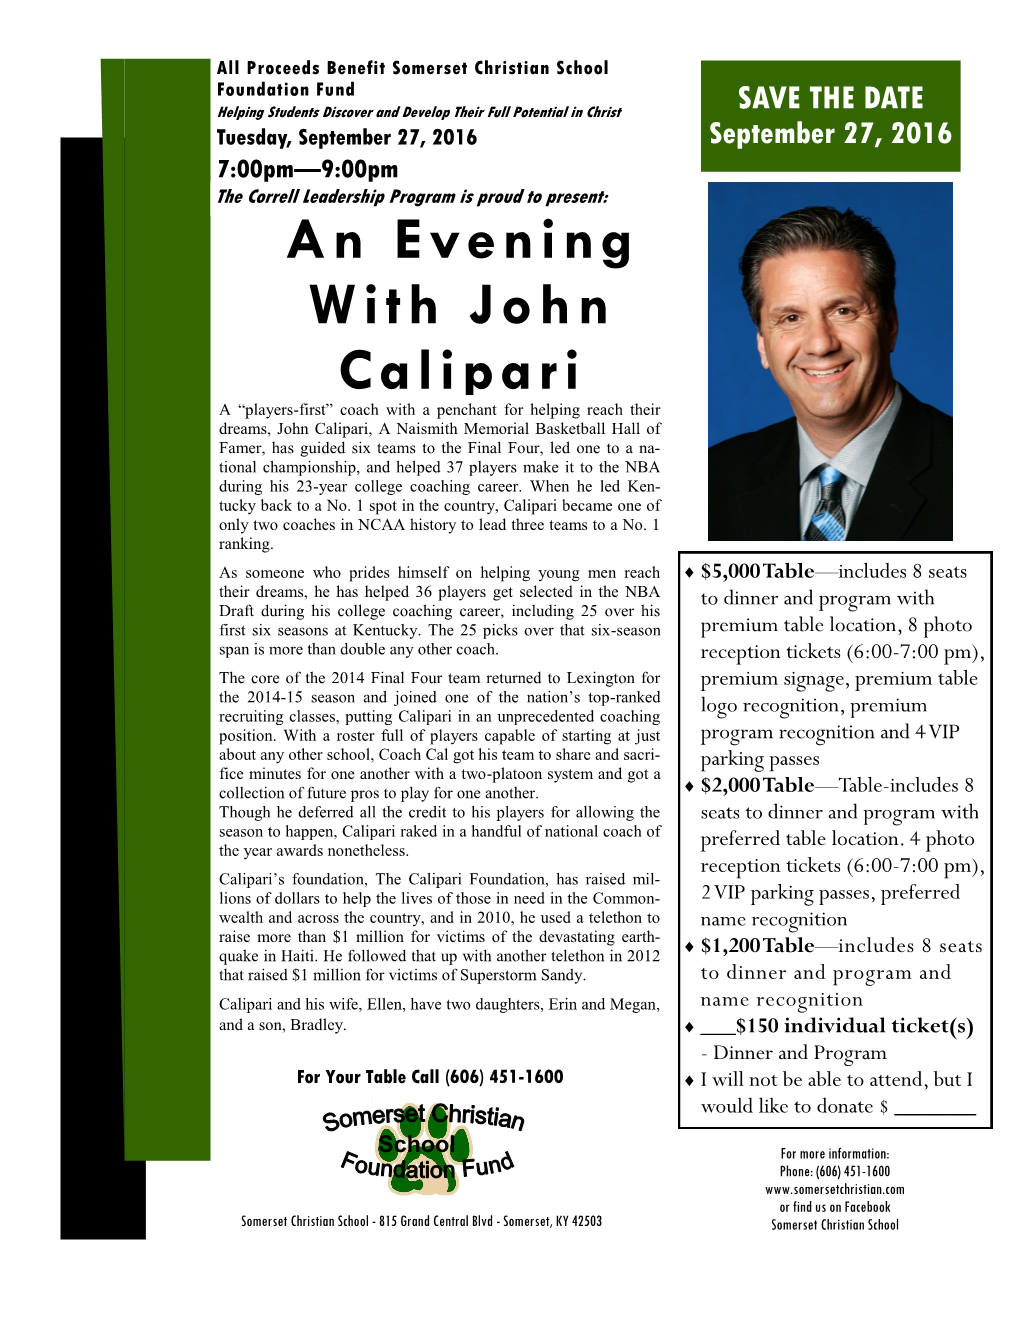 An Evening with John Calipari